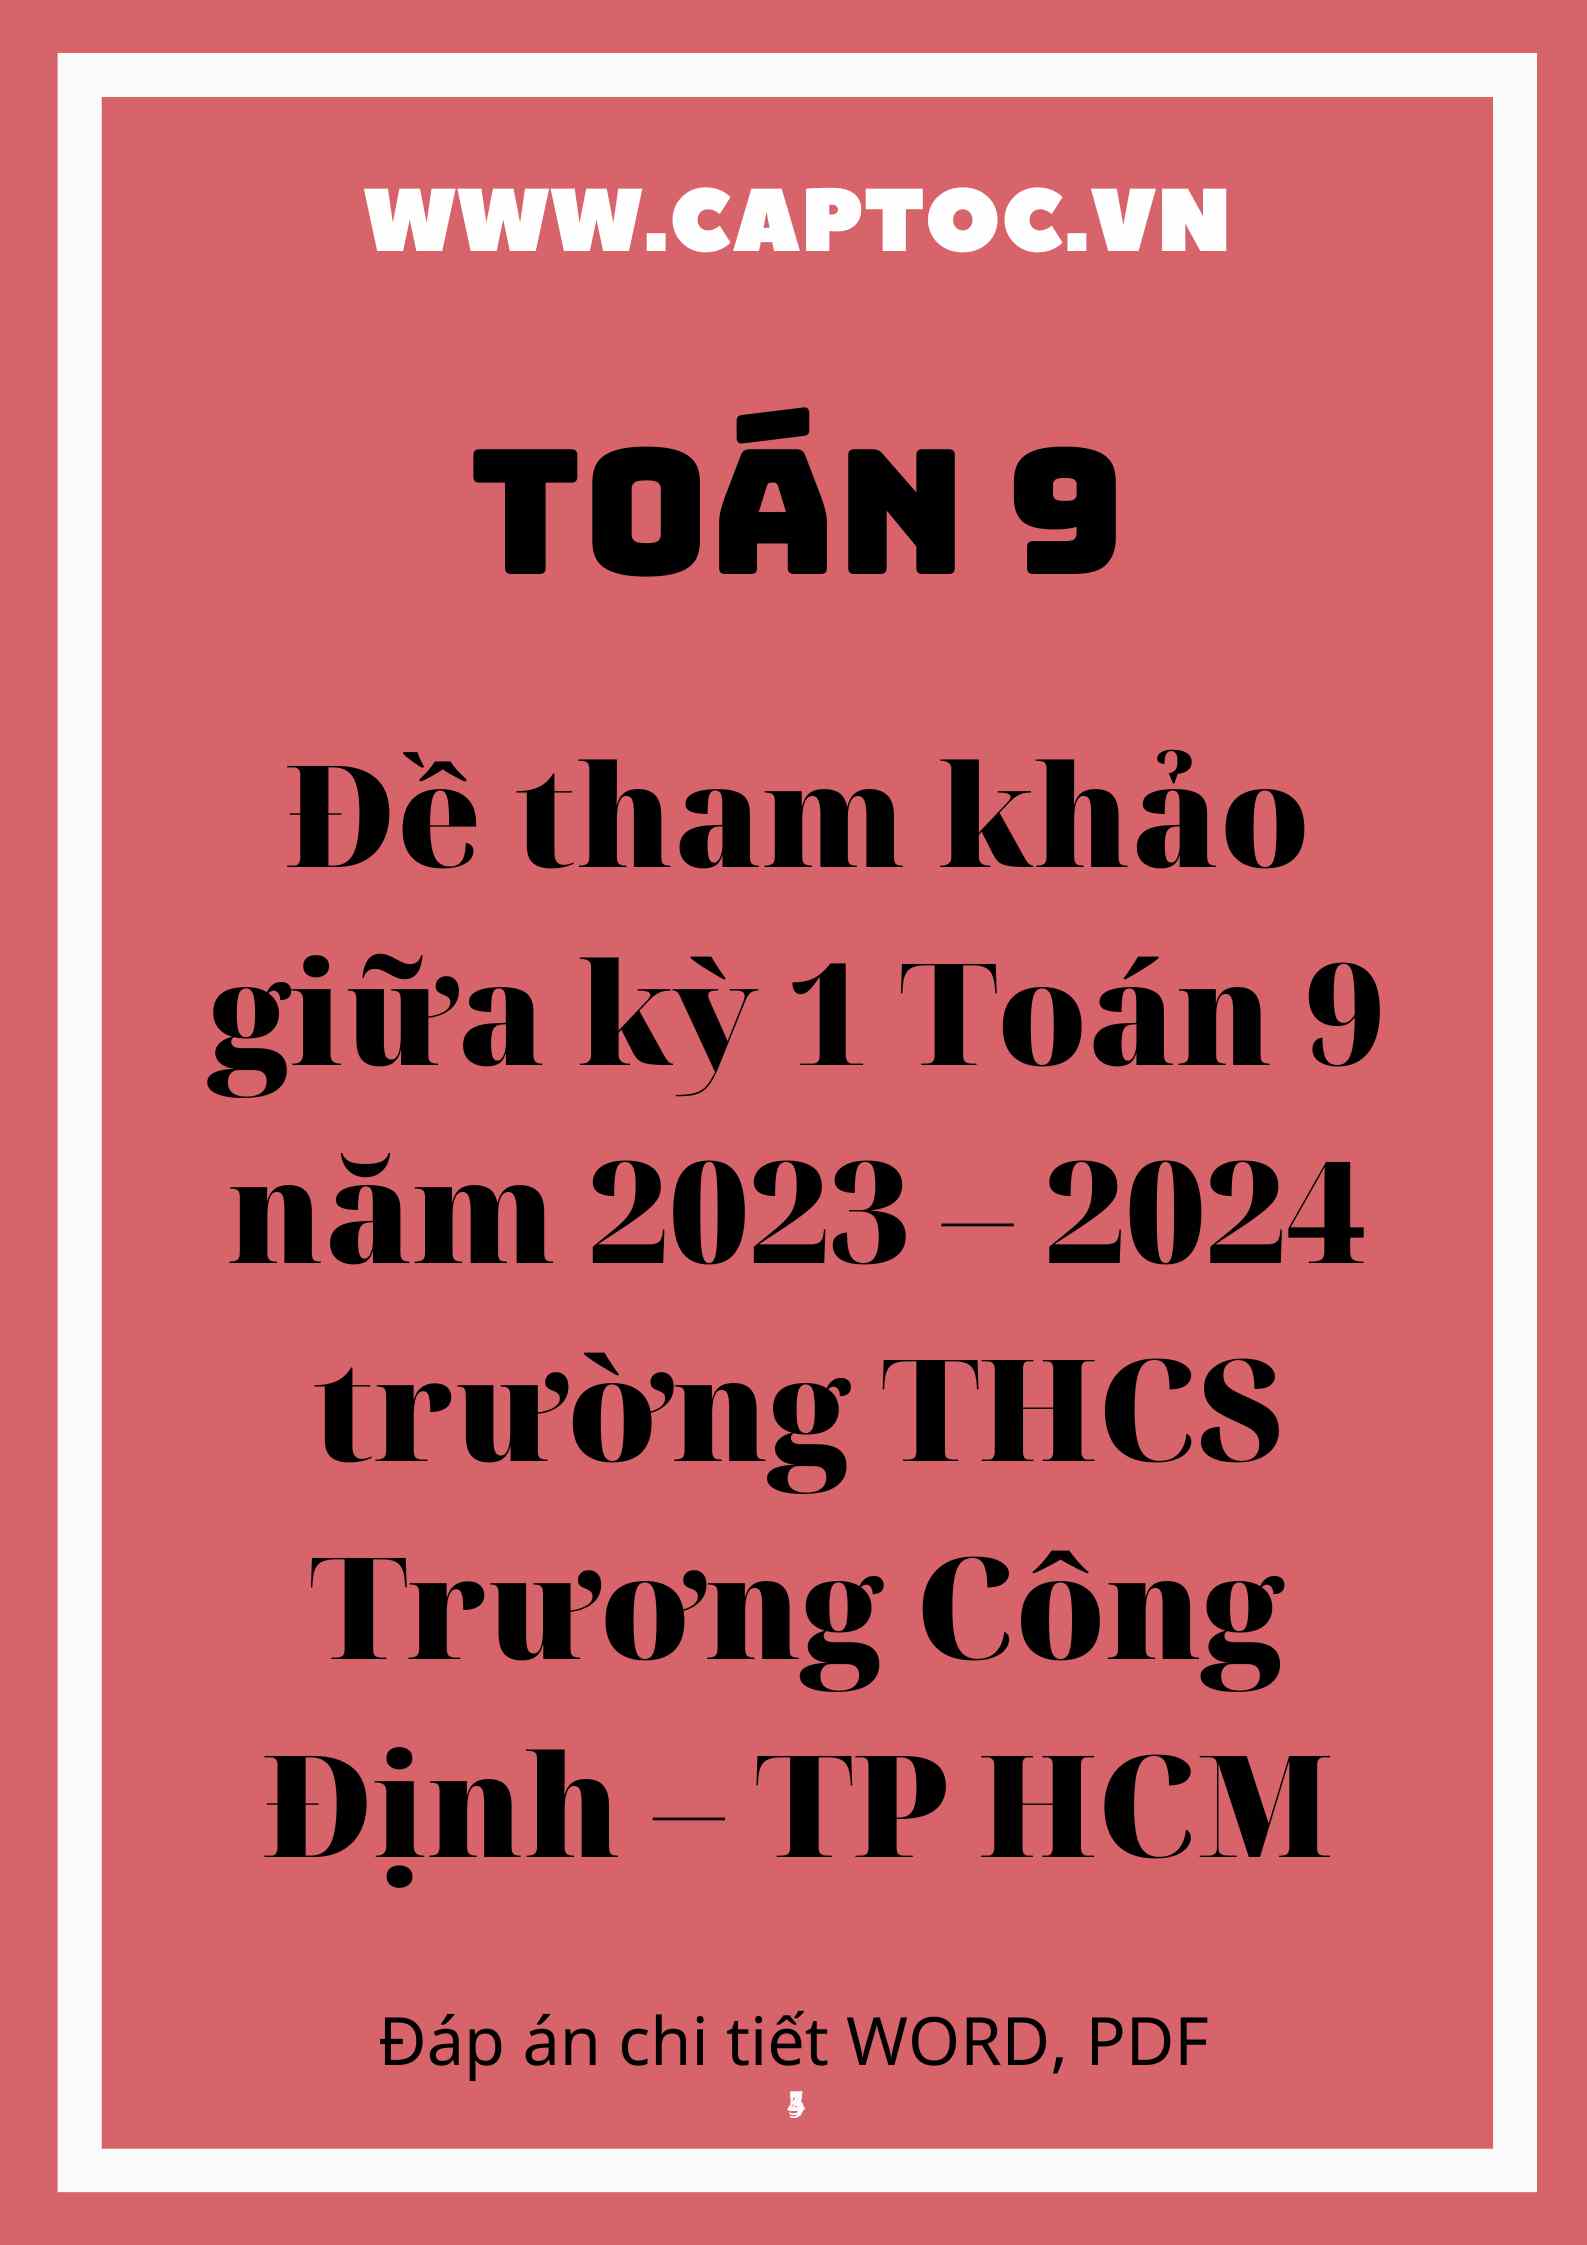 Đề tham khảo giữa kỳ 1 Toán 9 năm 2023 – 2024 trường THCS Trương Công Định – TP HCM